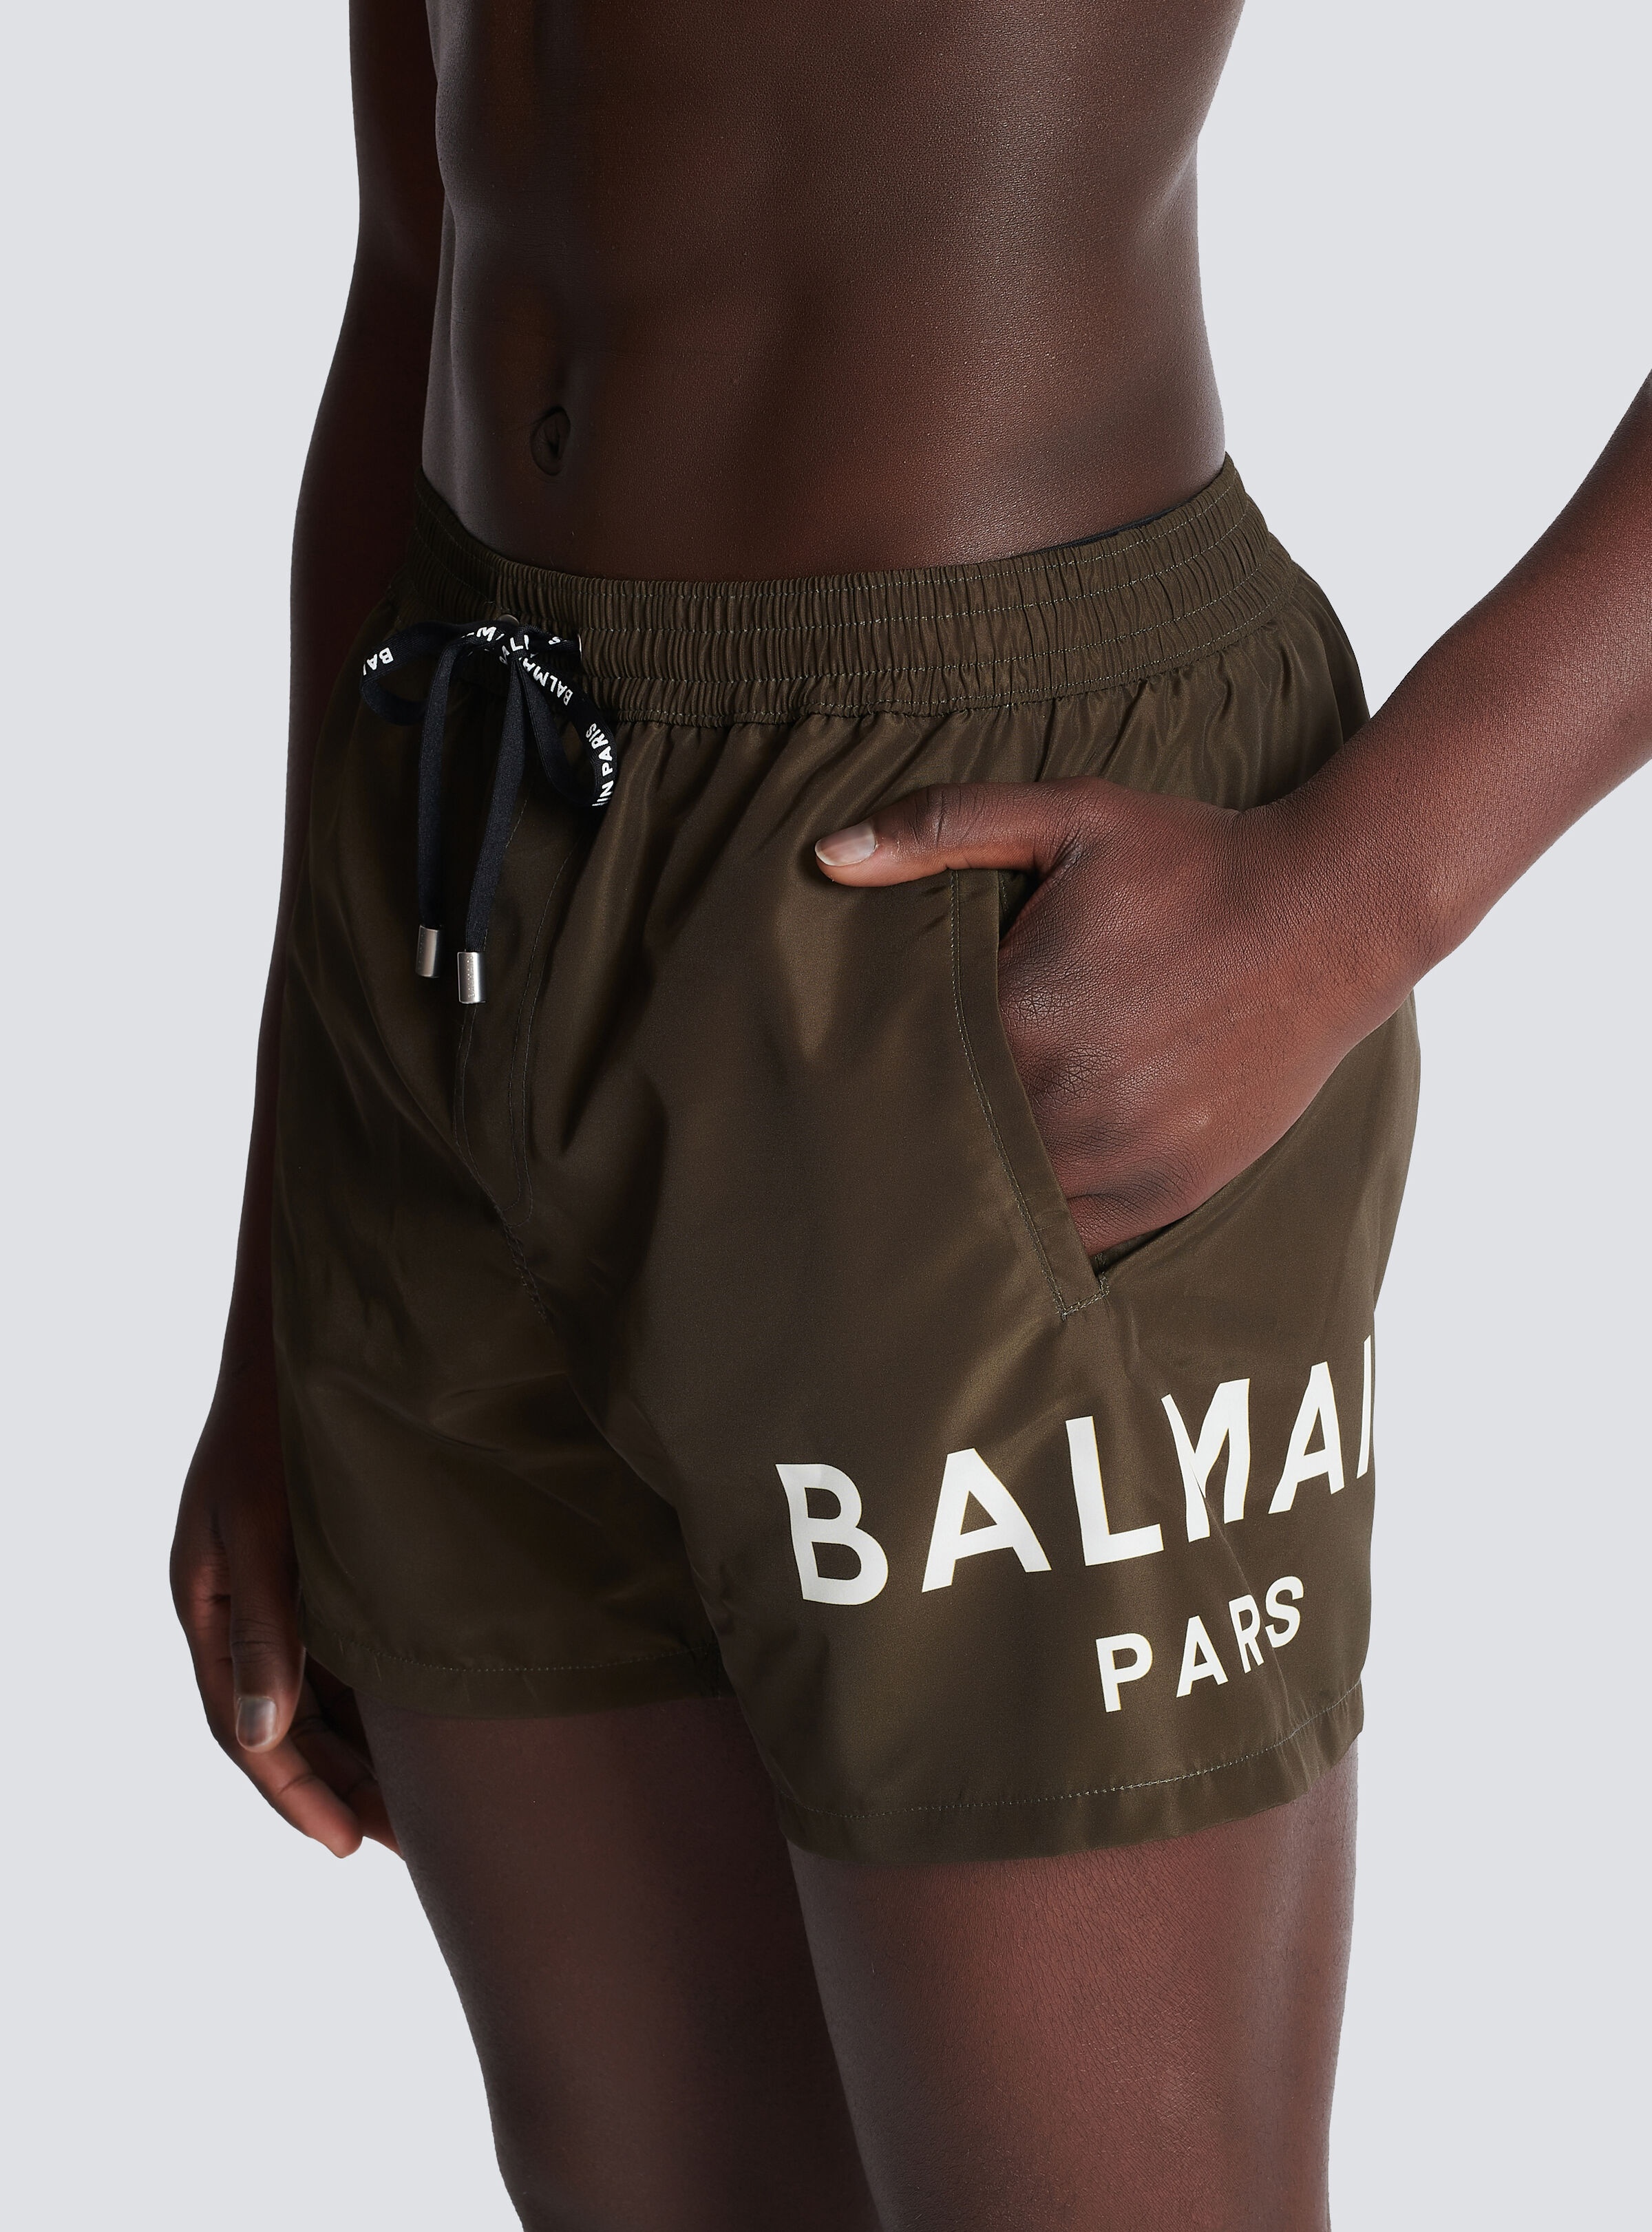 Balmain Paris swim shorts - 6